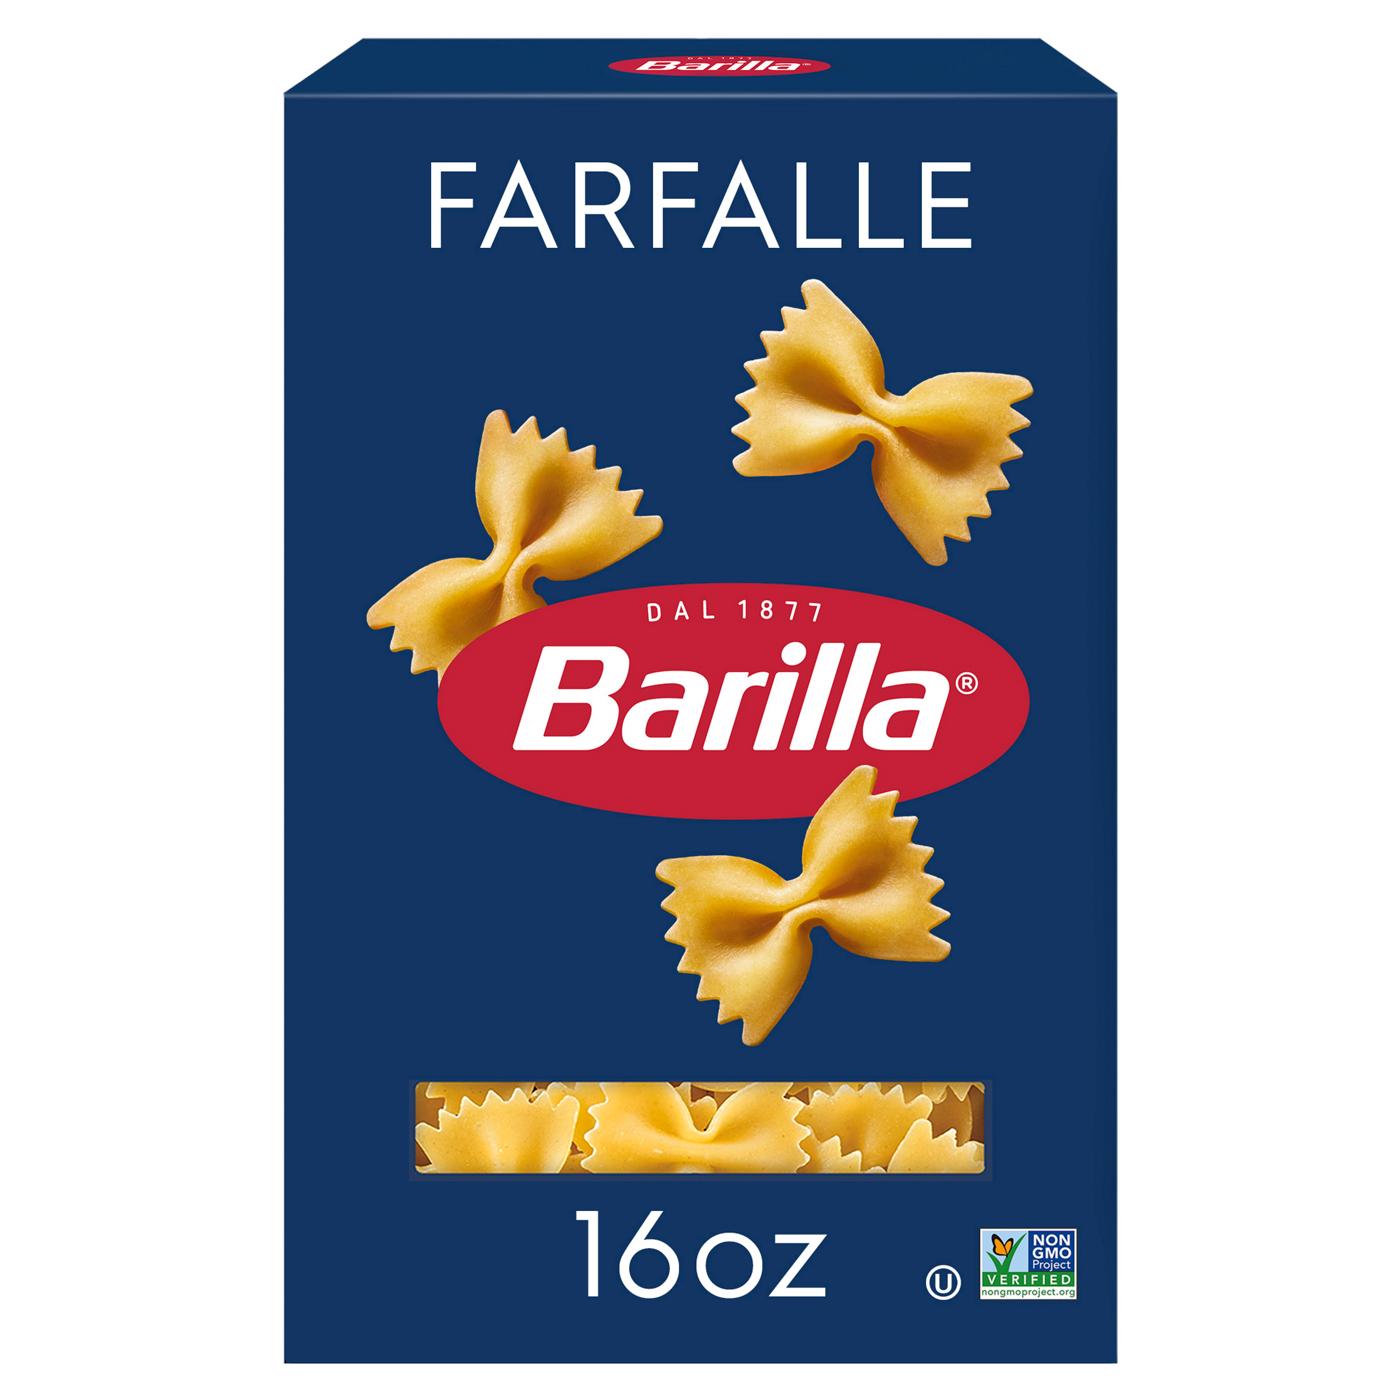 Barilla Farfalle Pasta; image 1 of 6